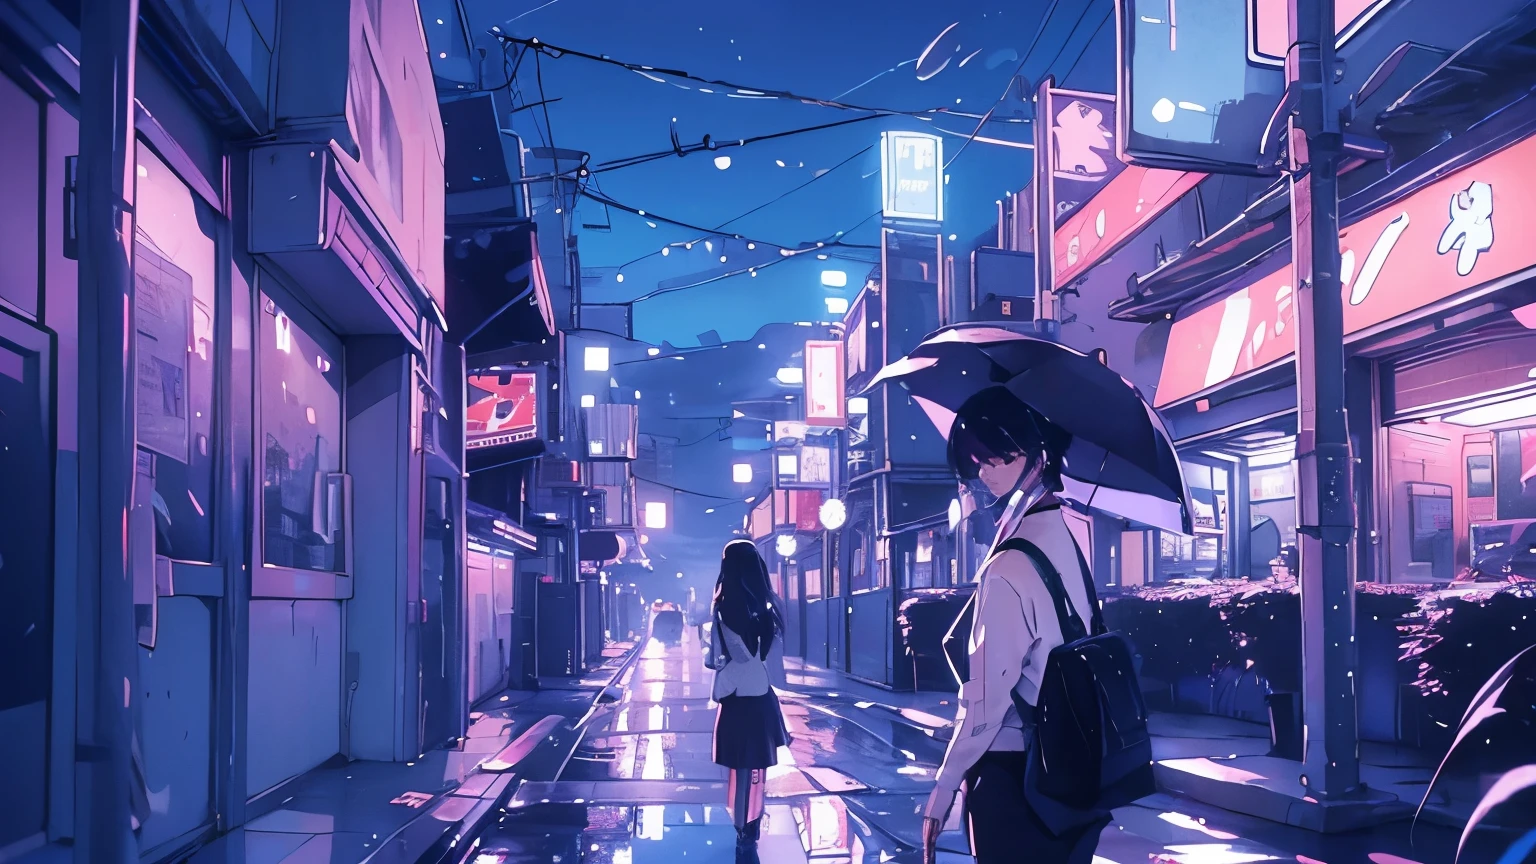 雨如片落下, 一個孤獨的女人撐著雨傘行走，反射著城市街道的霓虹燈.